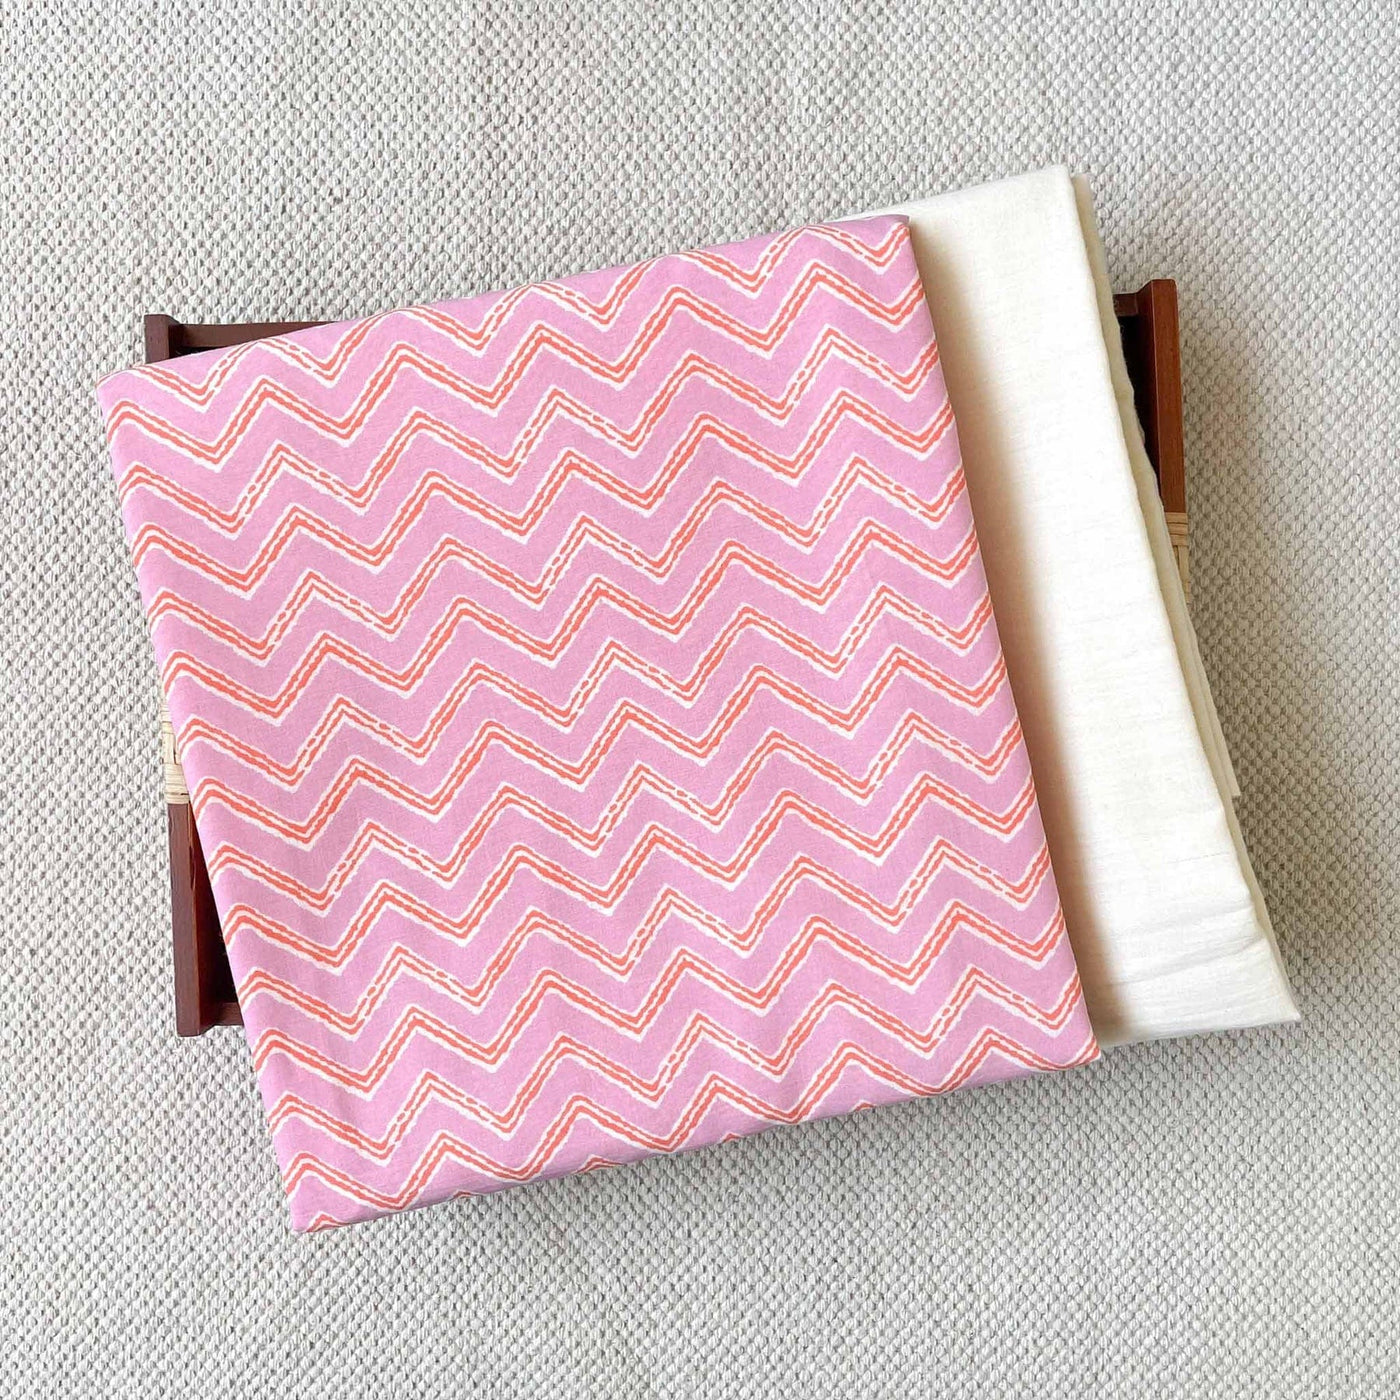 Fabric Pandit Kurta Set Unisex Light Pink And Orange Zig-Zag Pattern | Hand Block Printed Pure Cotton Kurta Fabric (3 Meters) | and Cotton Pyjama (2.5 Meters) | Unstitched Combo Set